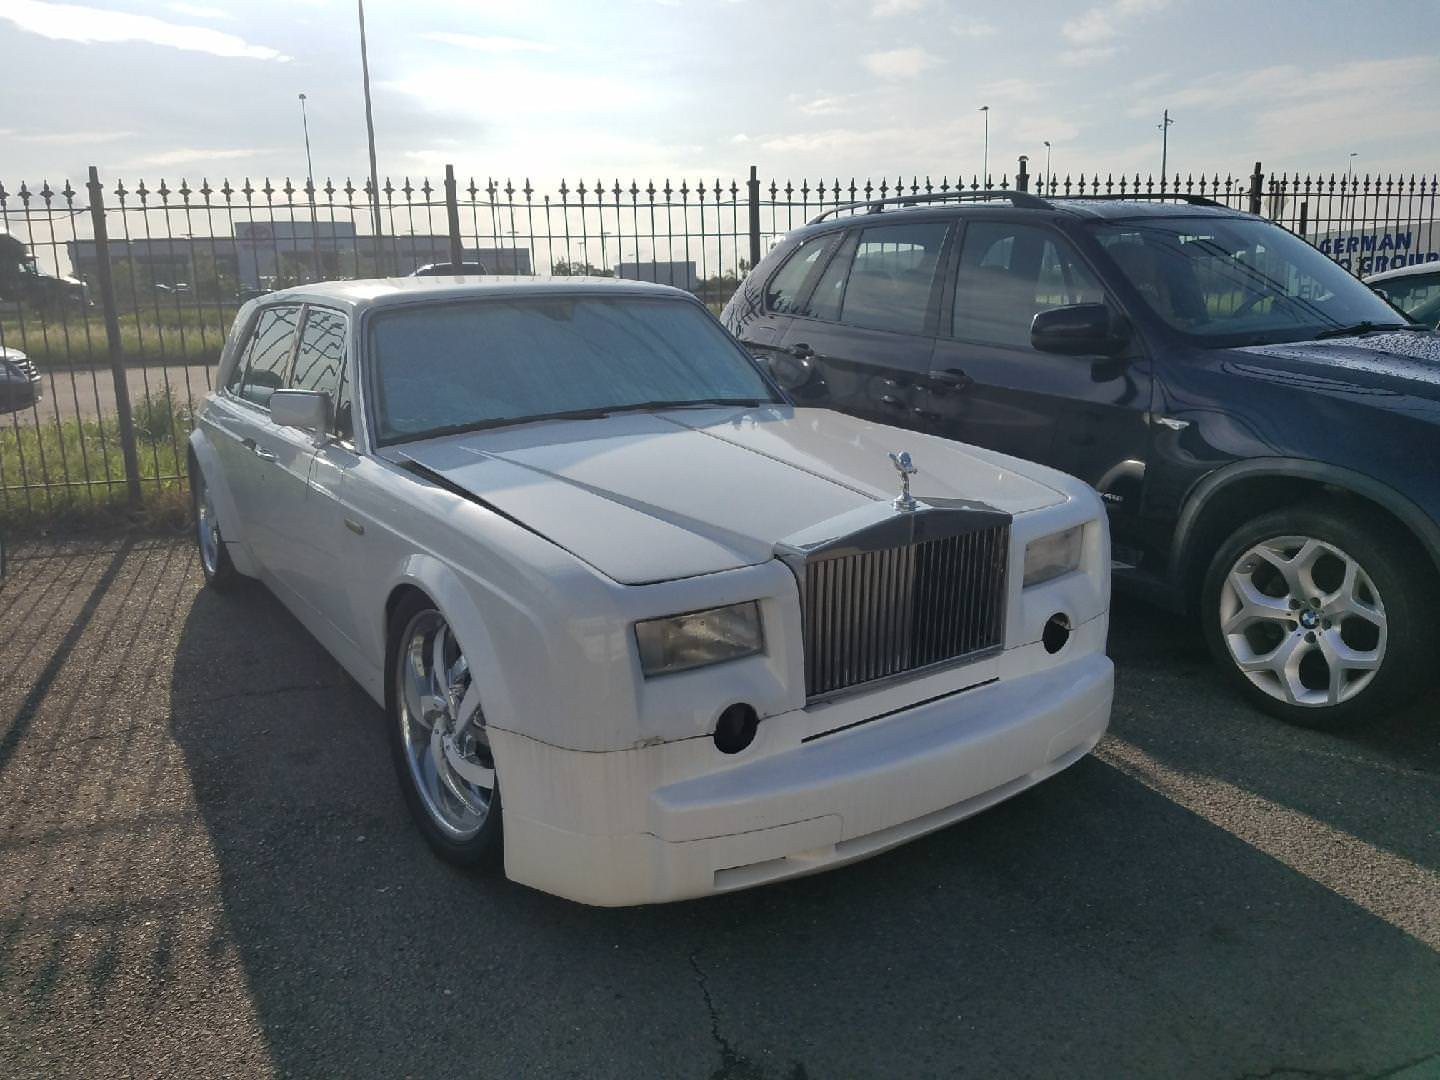 RollsRoyce Phantom VIII ra mắt giới nhà giàu tại Abu Dhabi